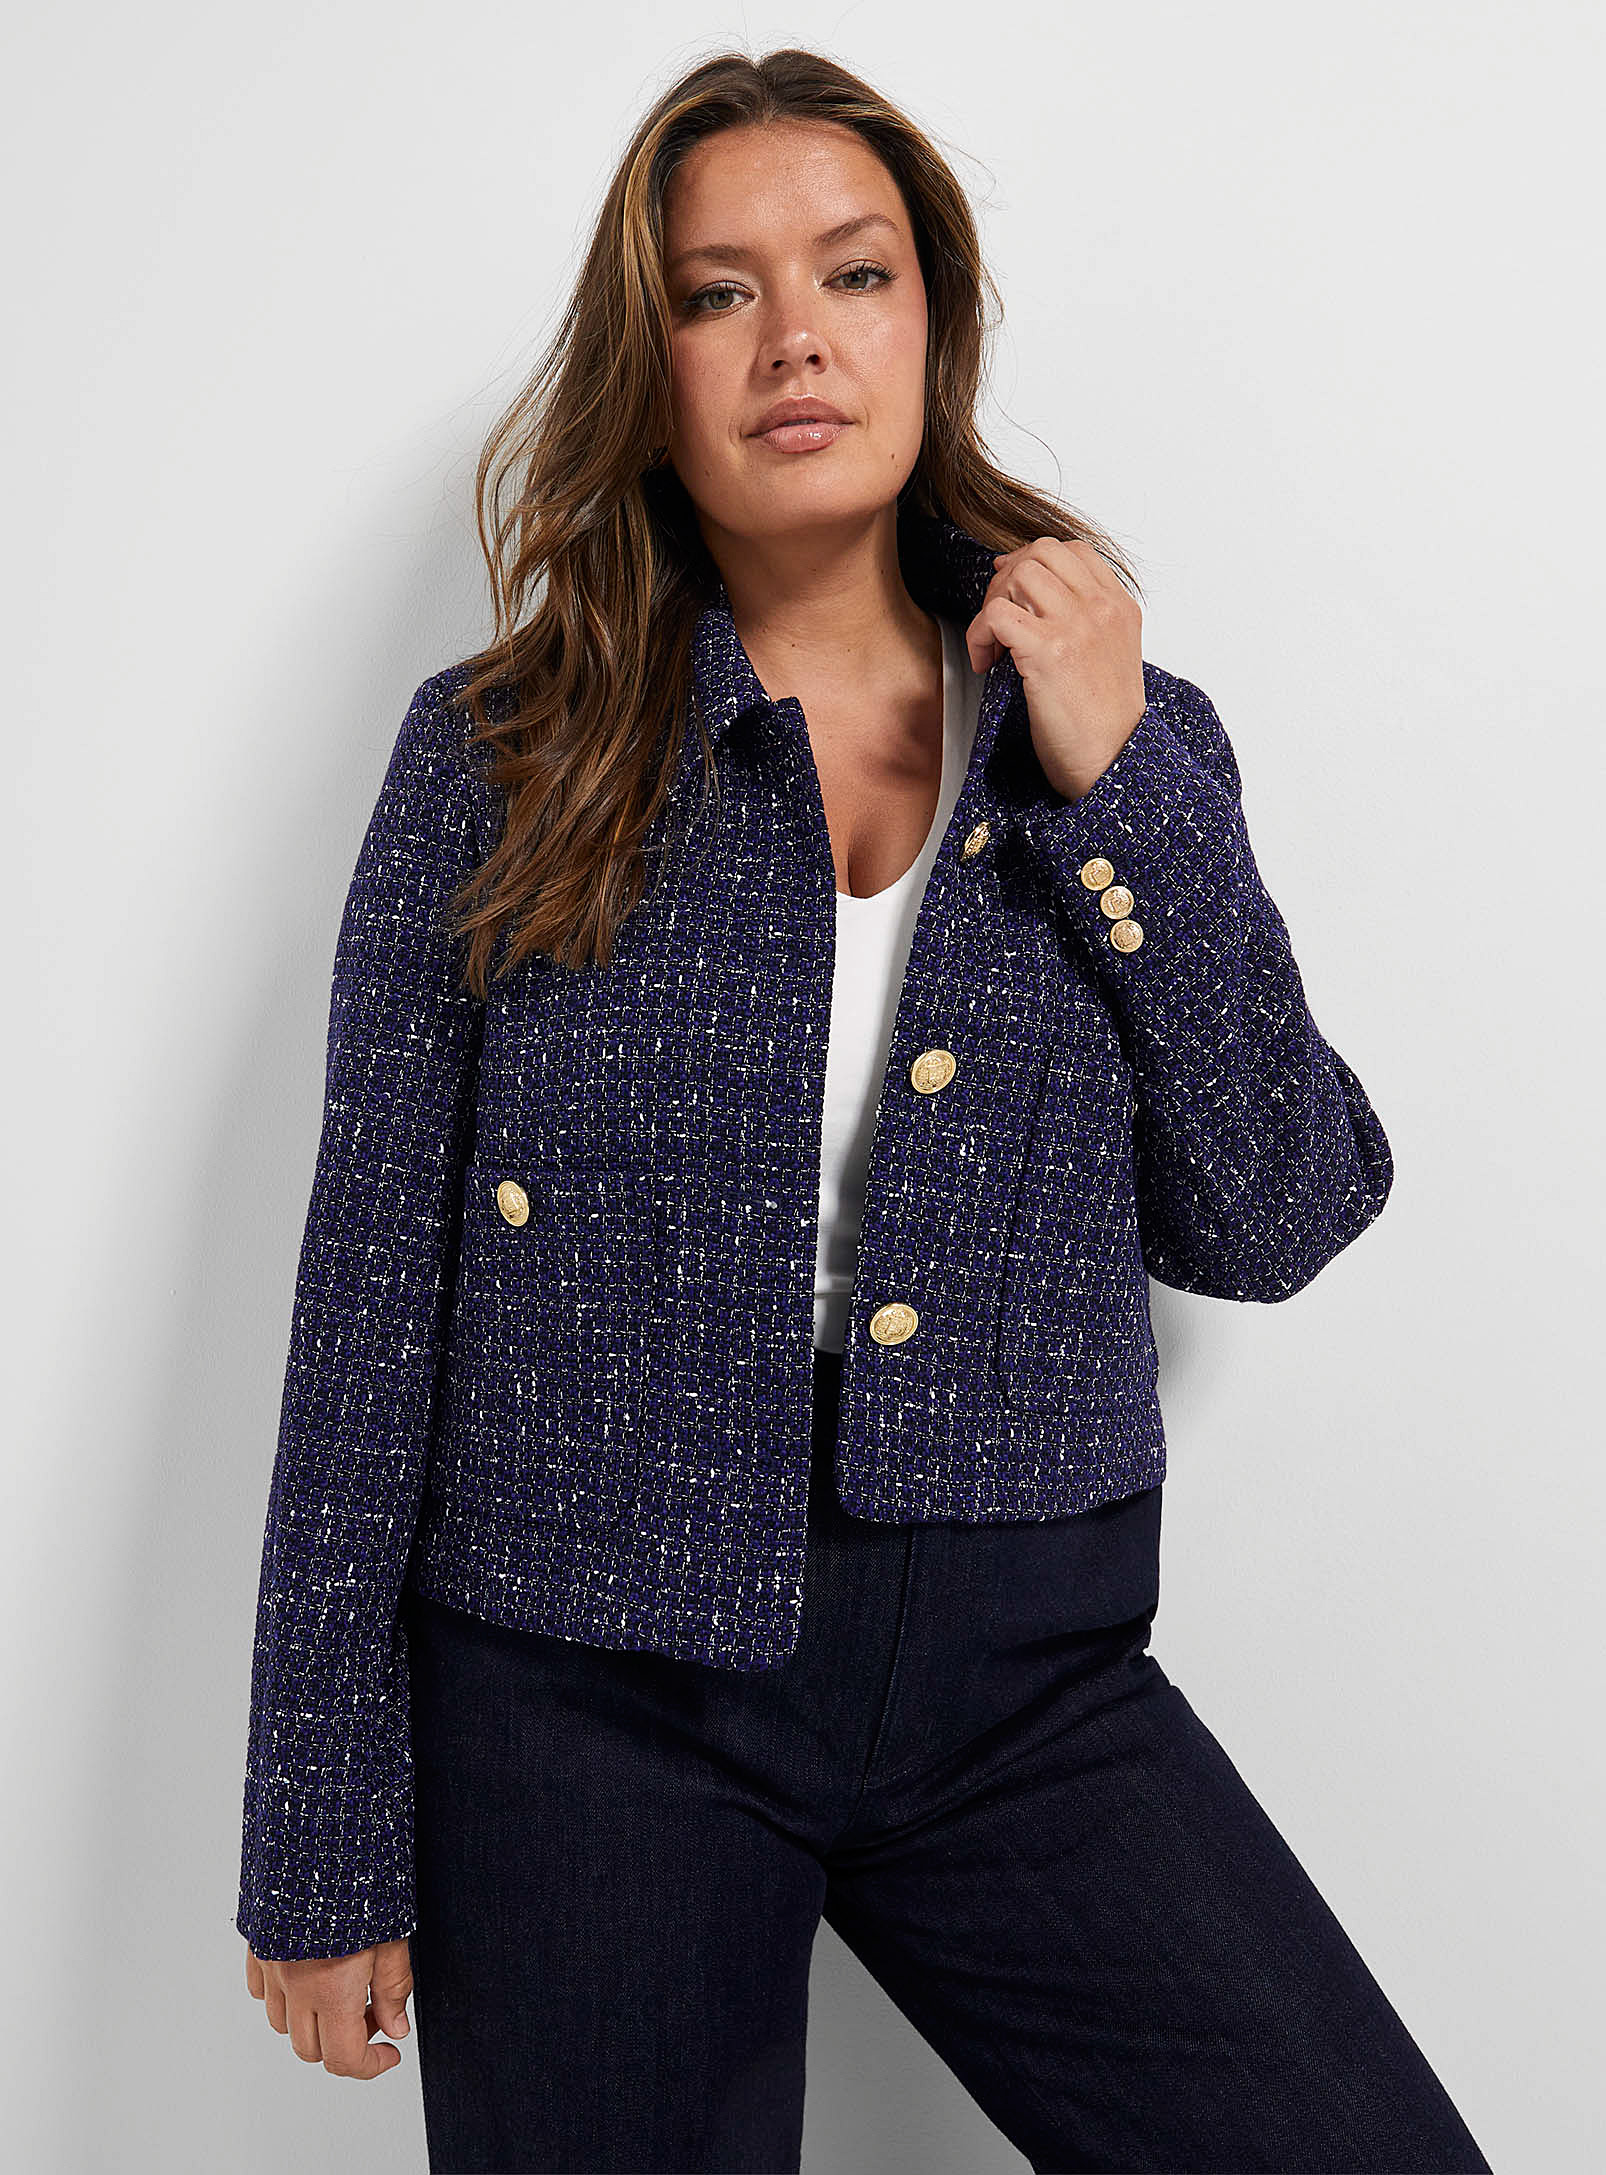 Contemporaine - Women's Dark blue tweed Blazer Jacket